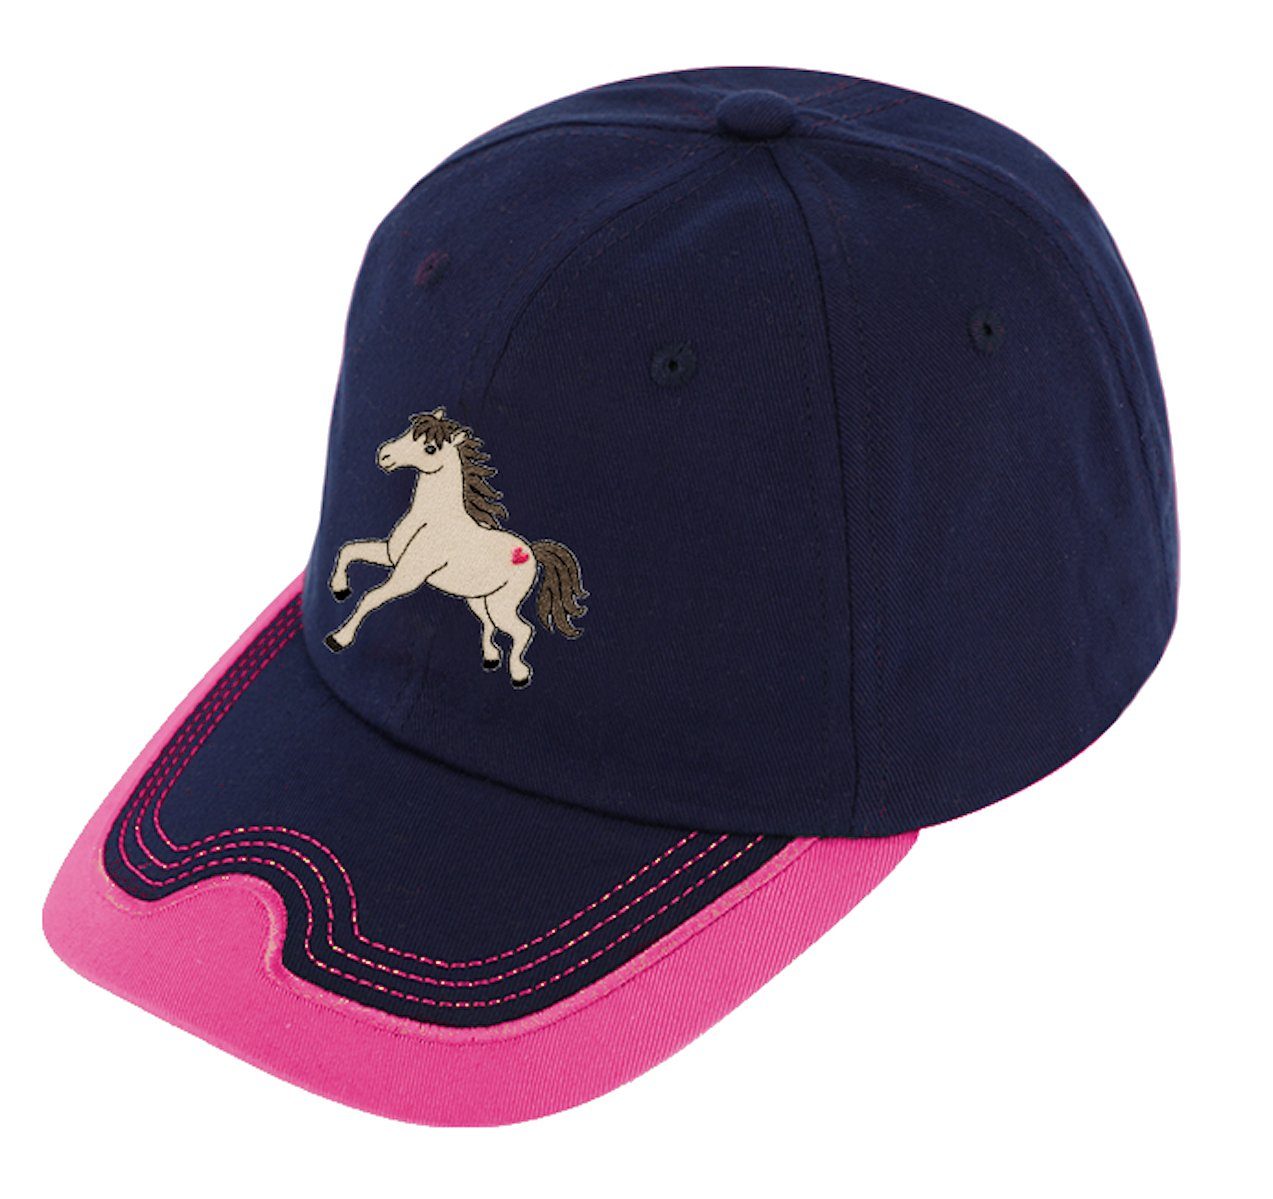 Mädchen Mütze Basecap Pferde cap Pferd Baseballcap Baseball Fiebig pink marine Fiebig Cap